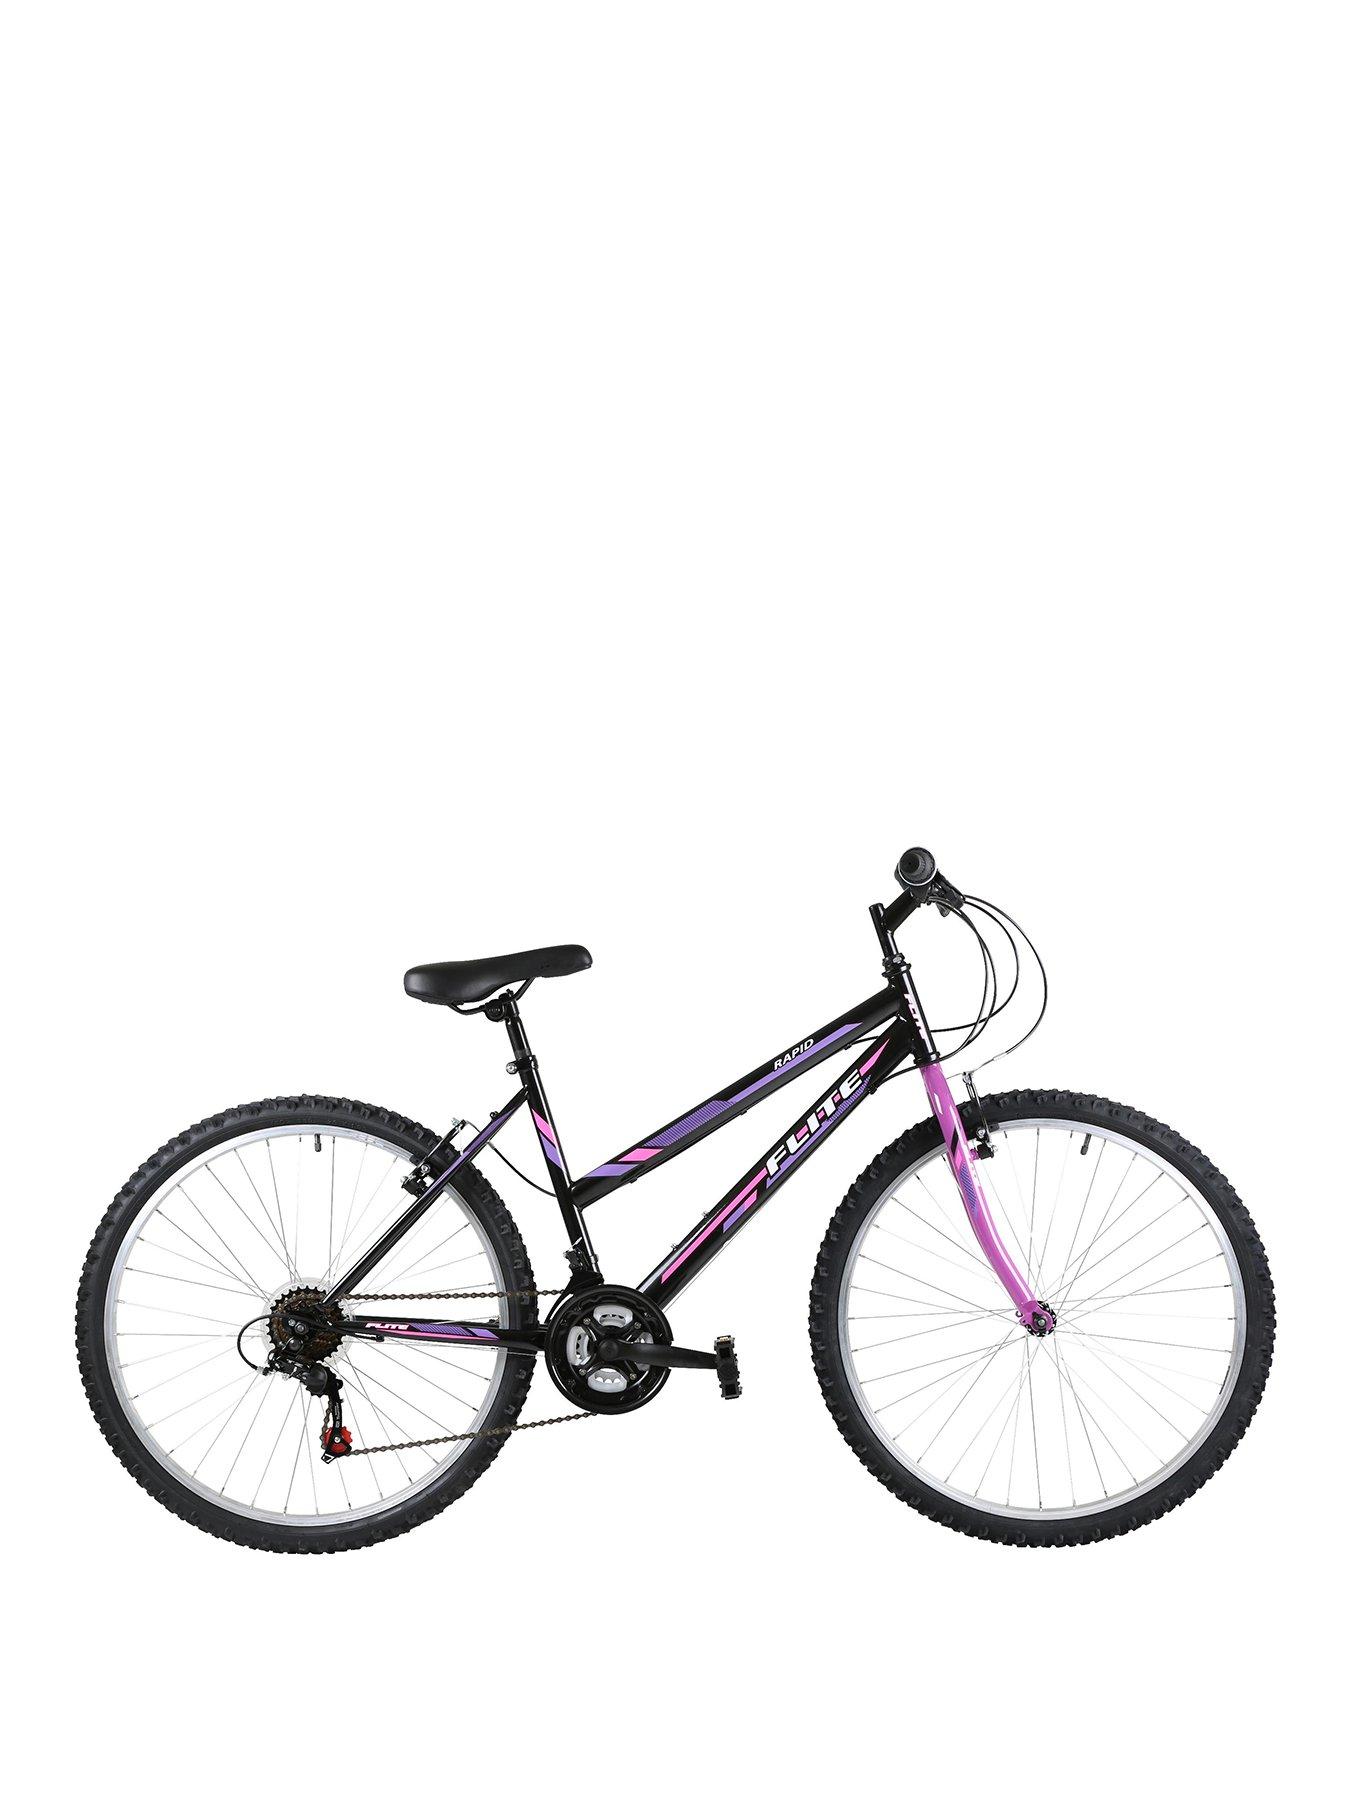 bike frame 17 inch